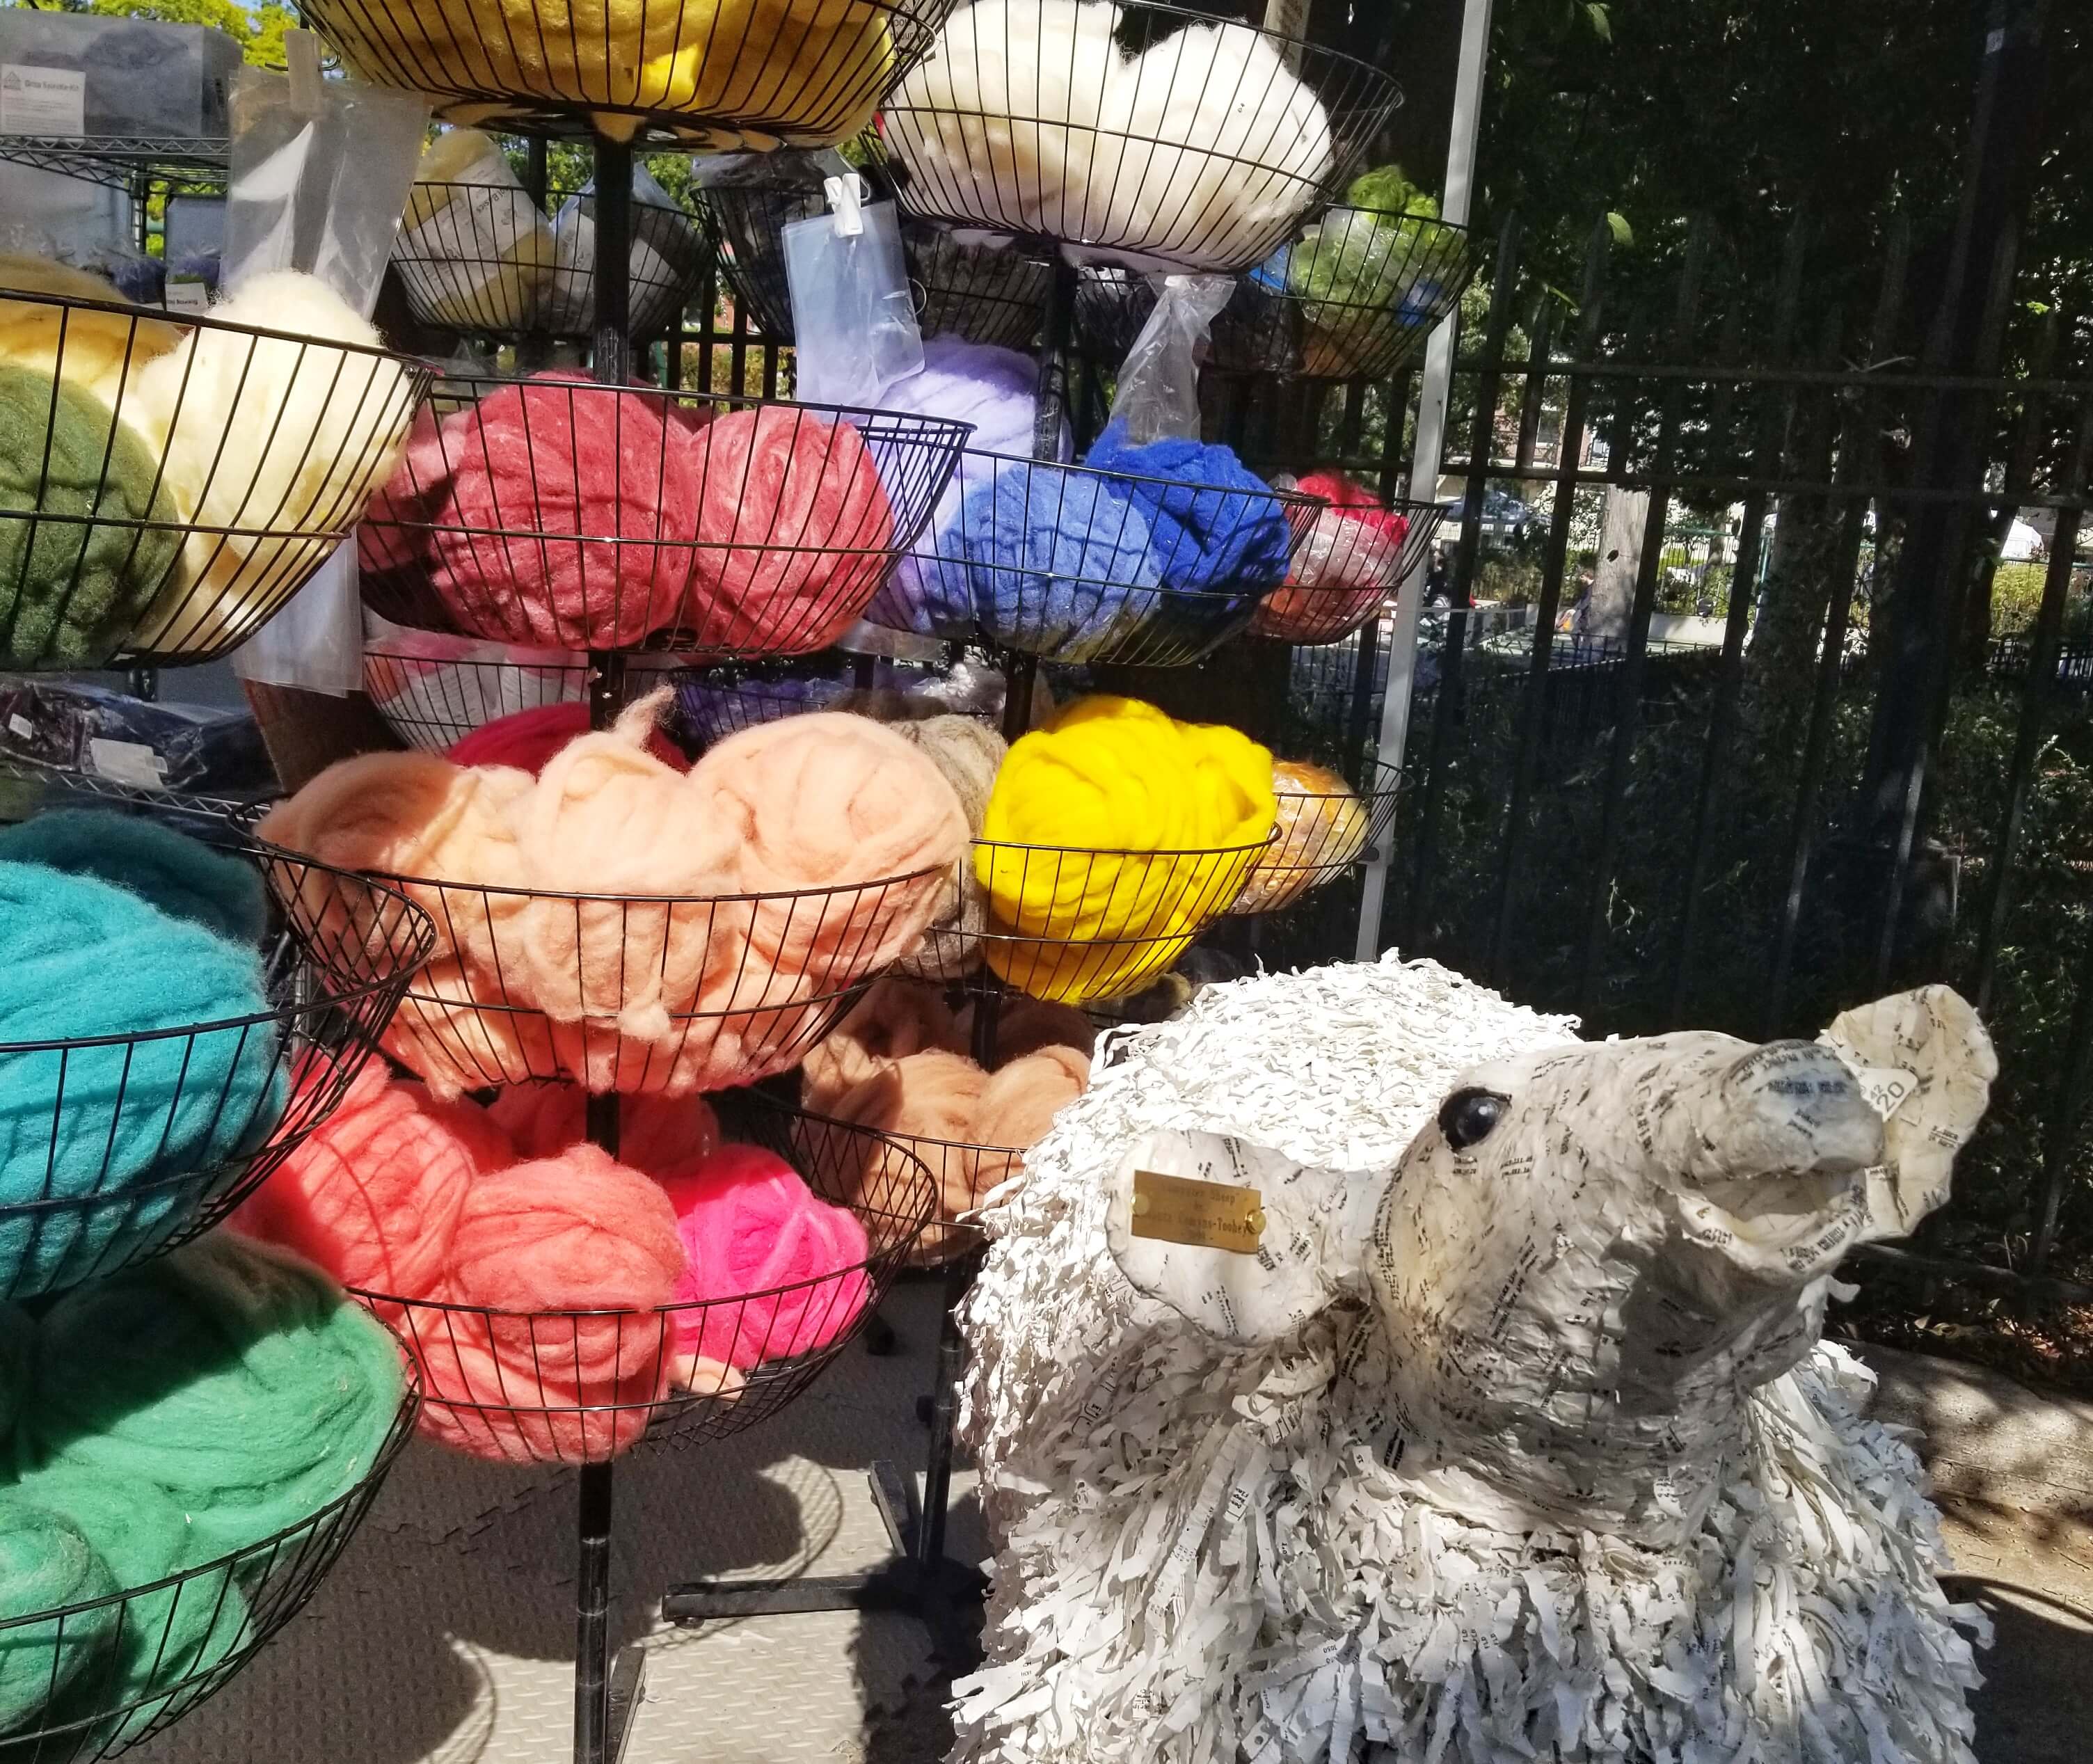 yarn on display